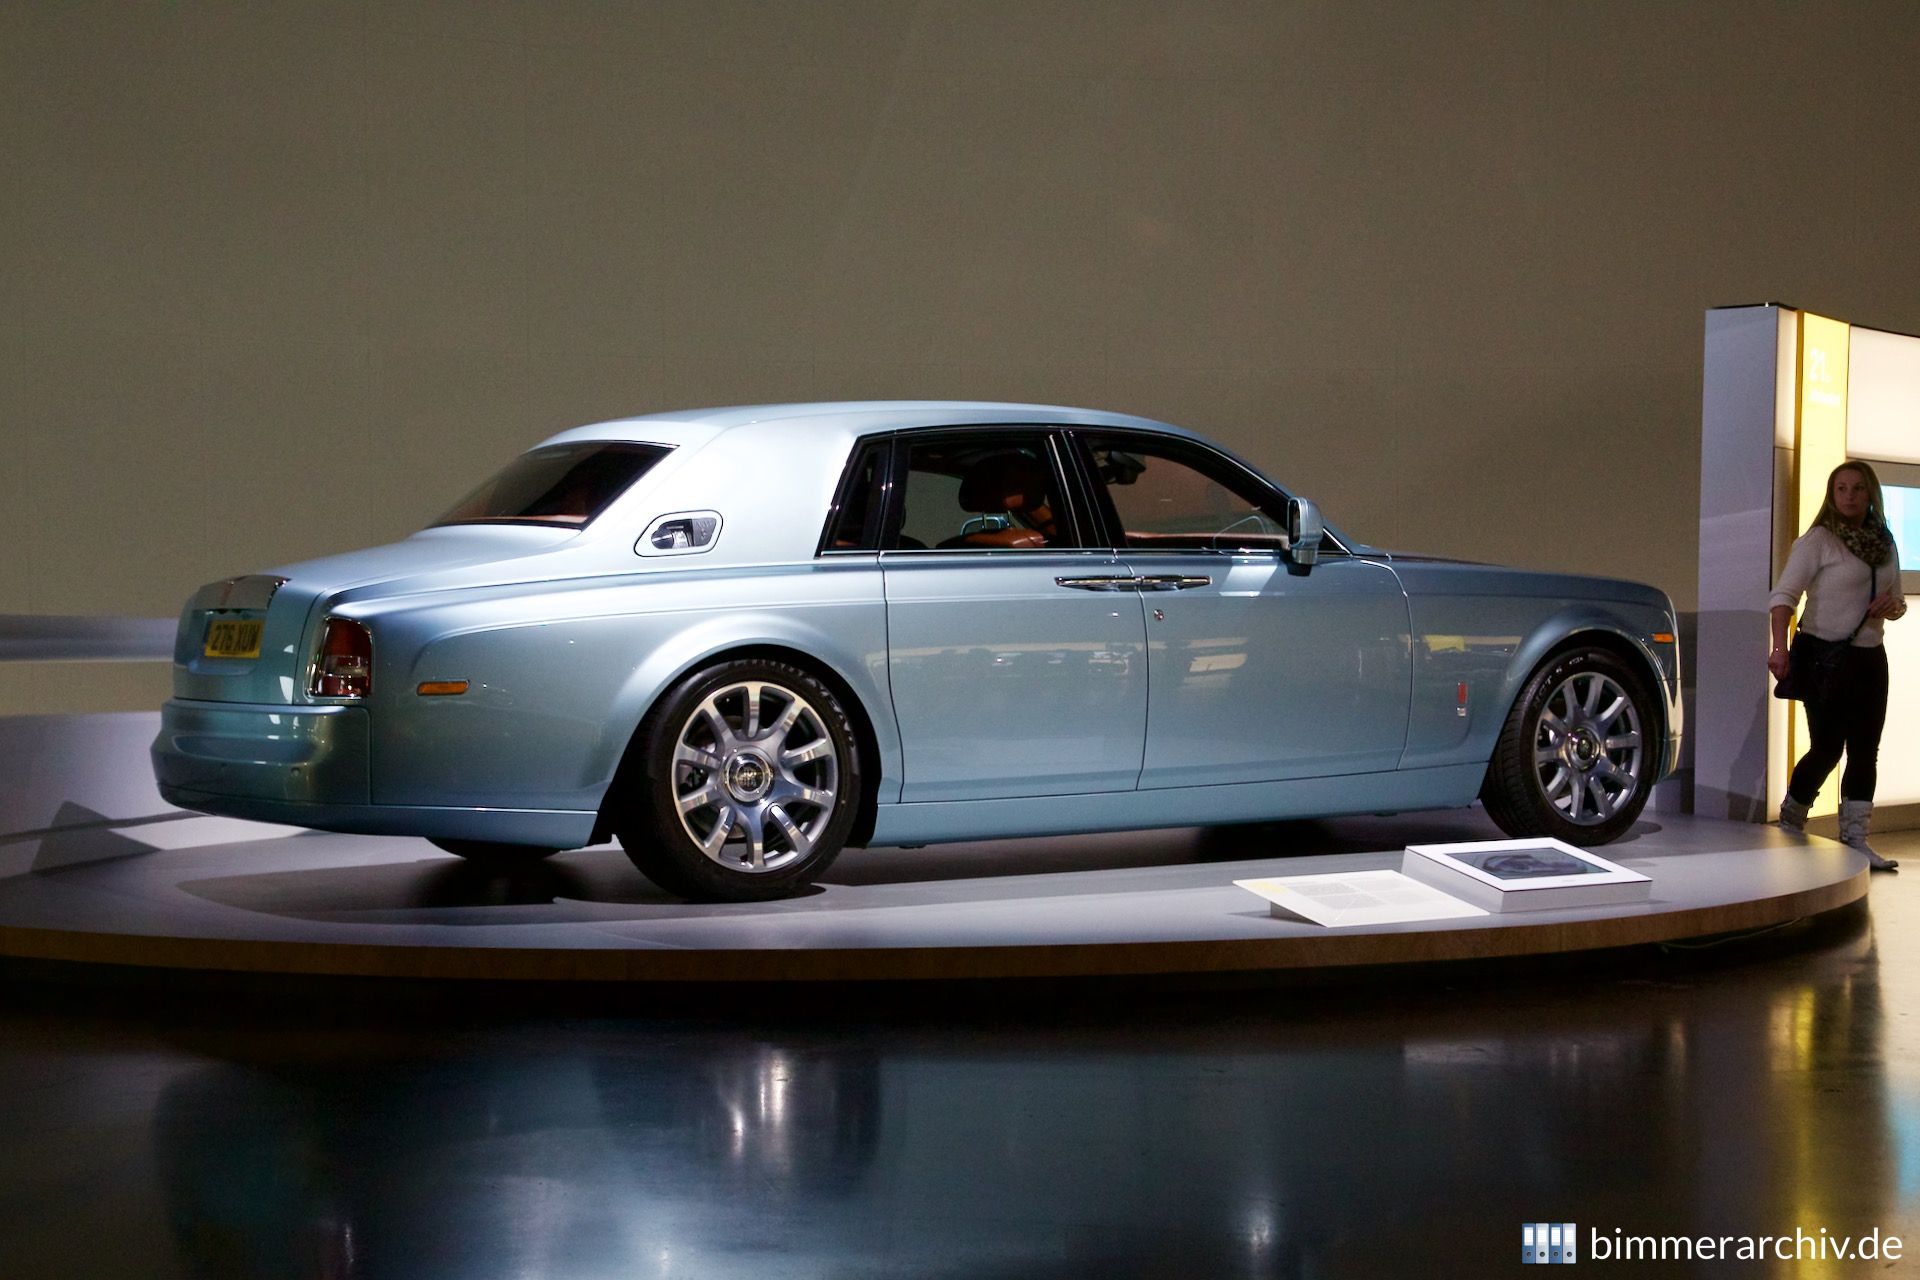 Rolls-Royce 102EX